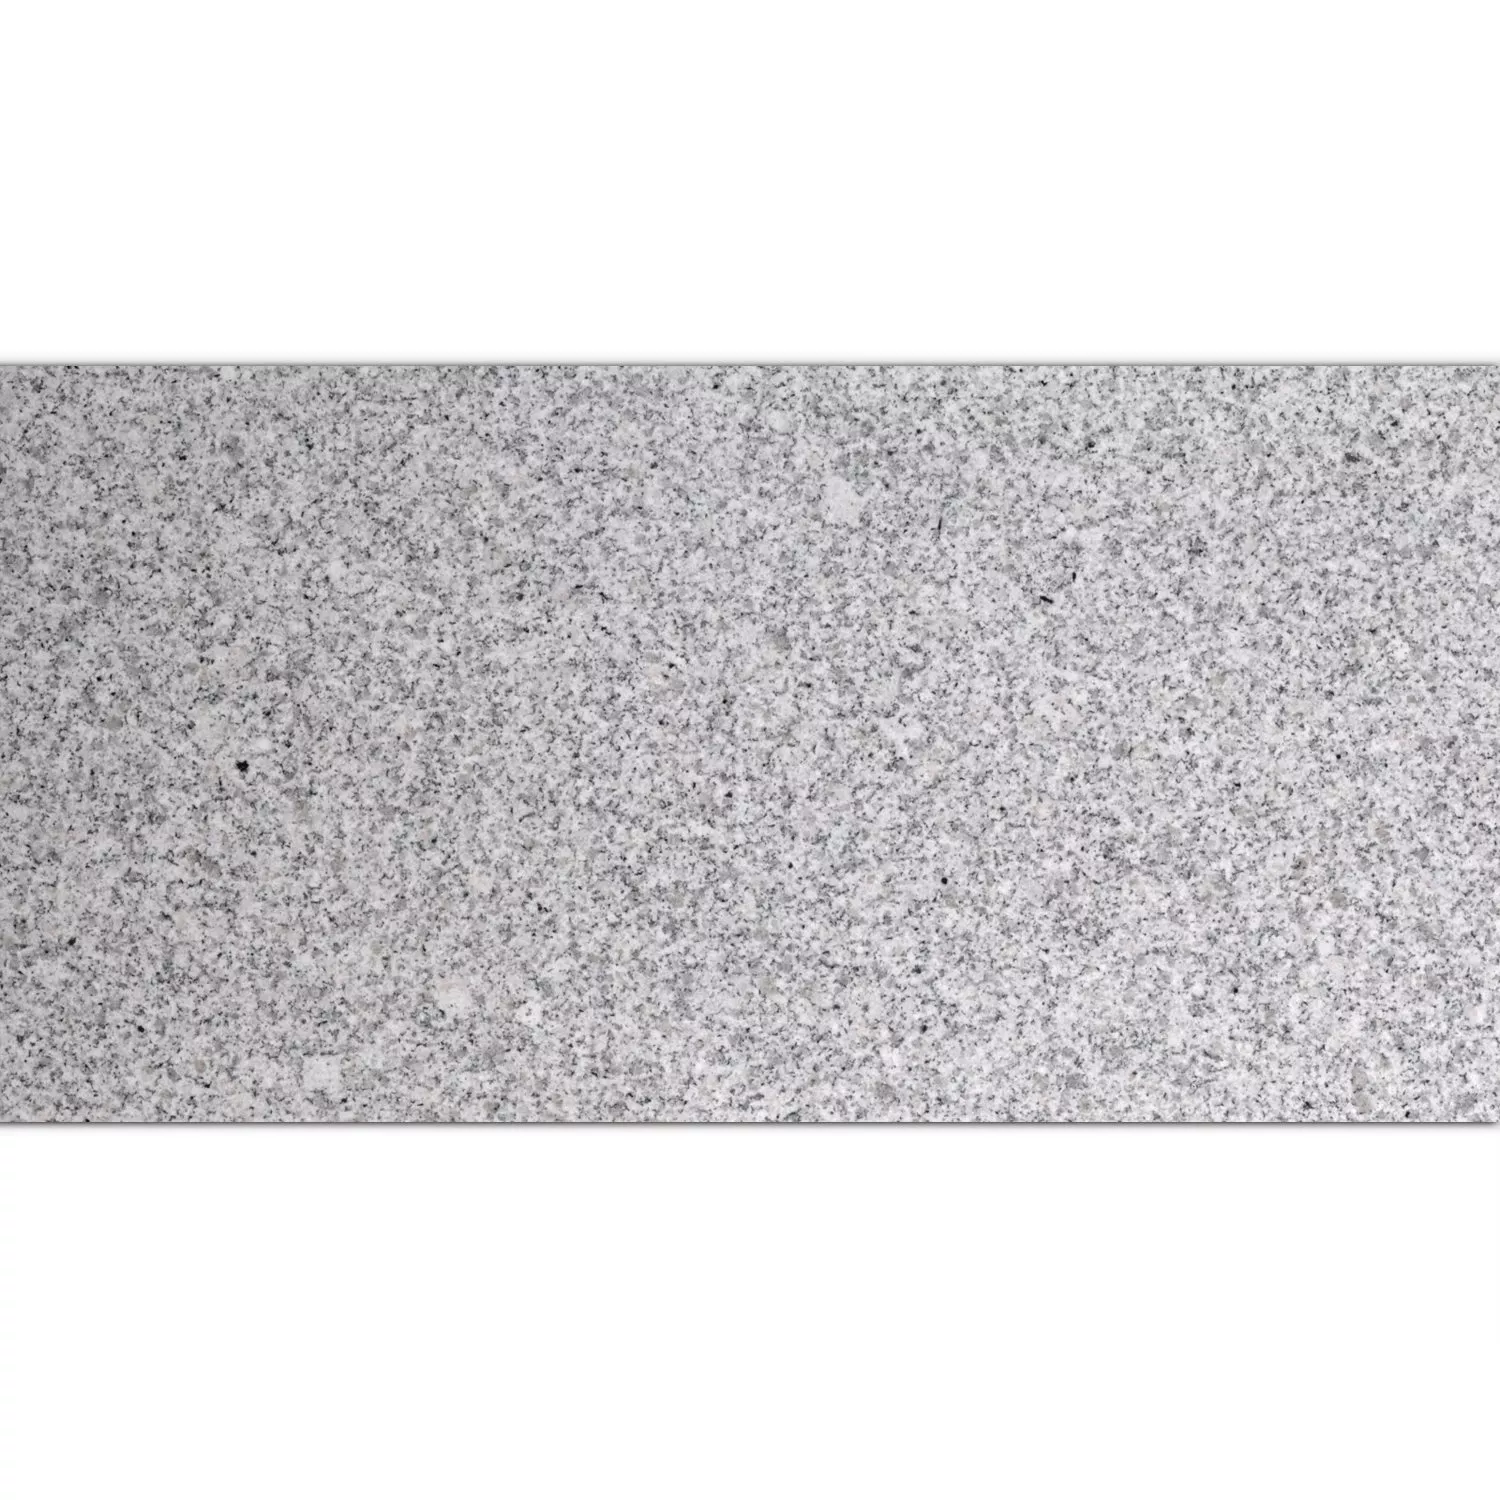 Ladrilhos De Pedra Natural Granito China Grey Polido 30,5x61cm